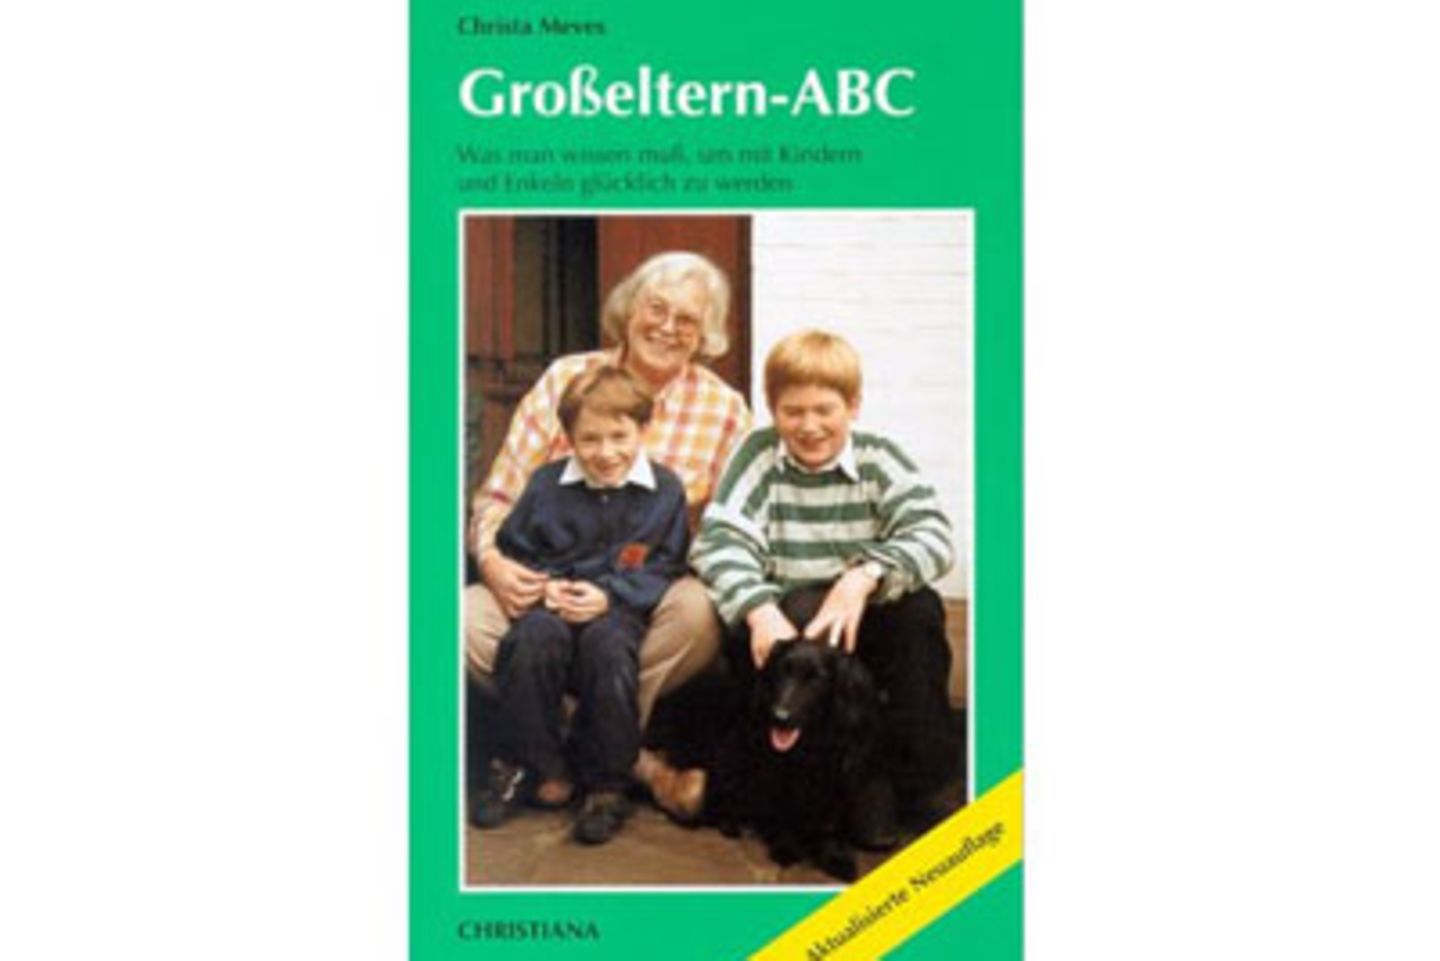 Grosseltern-ABC